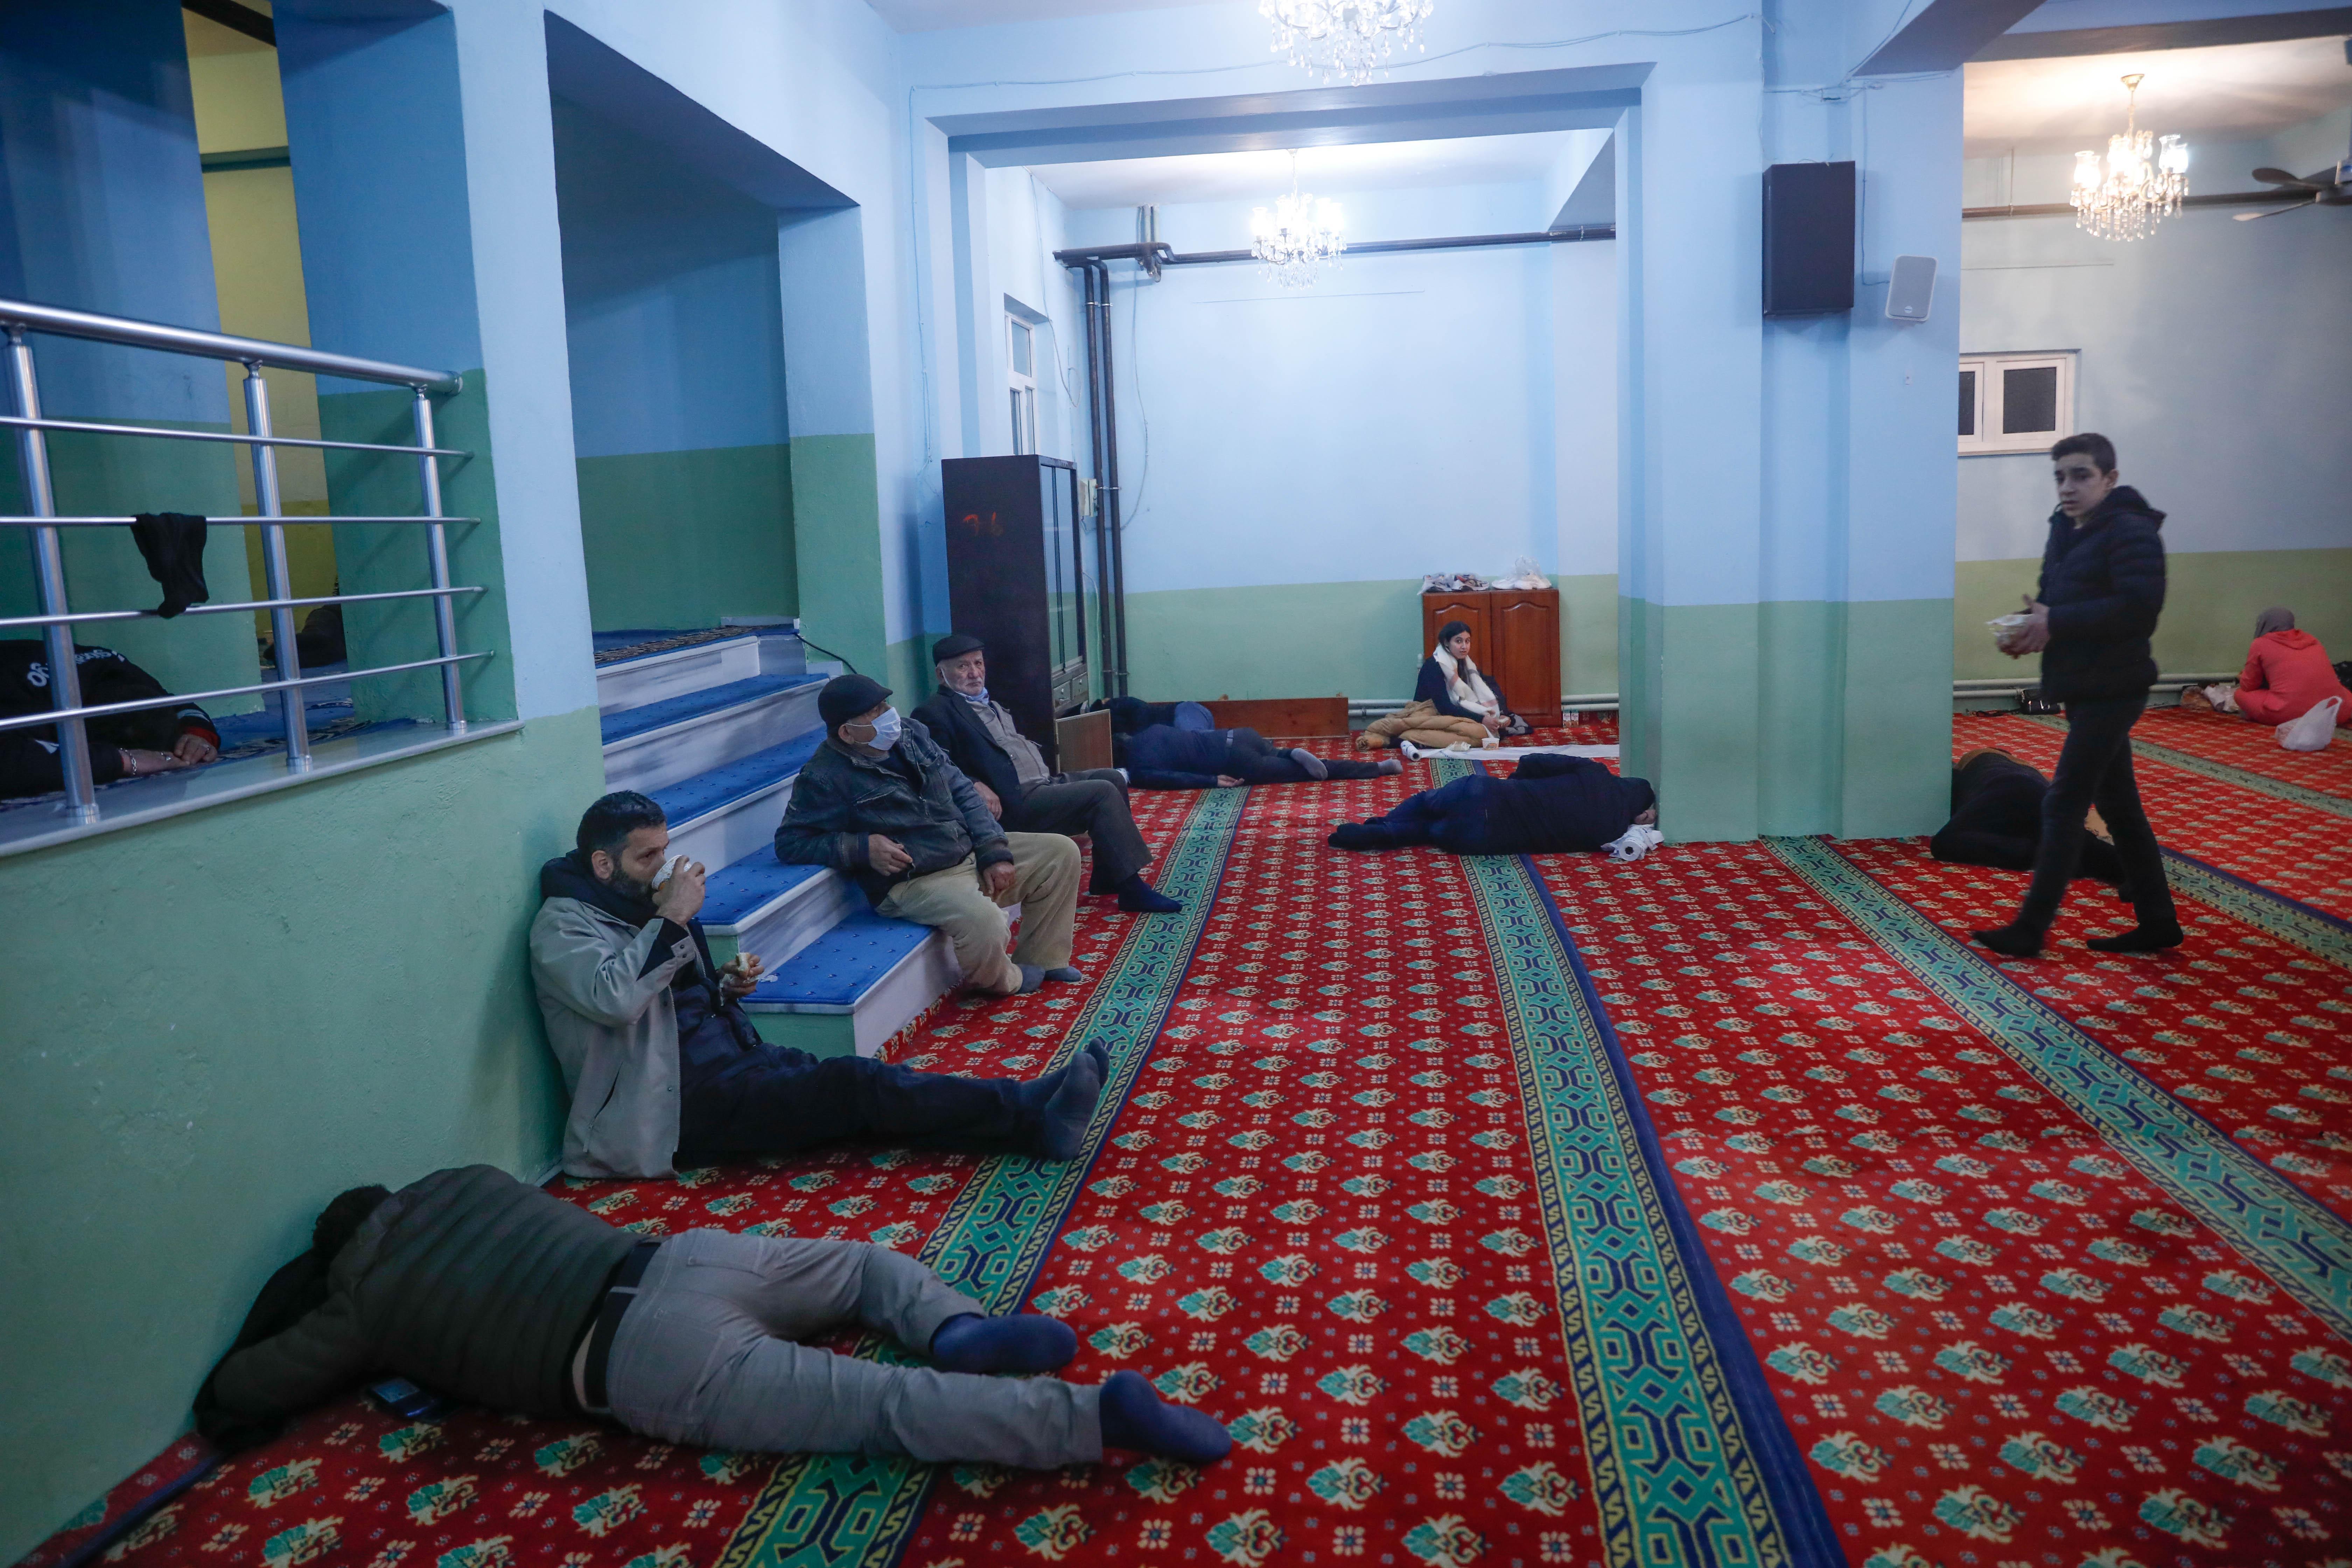 Arnavutköydeki otel fırsatçılığı iddiası... Geceyi camilerde geçirdiler